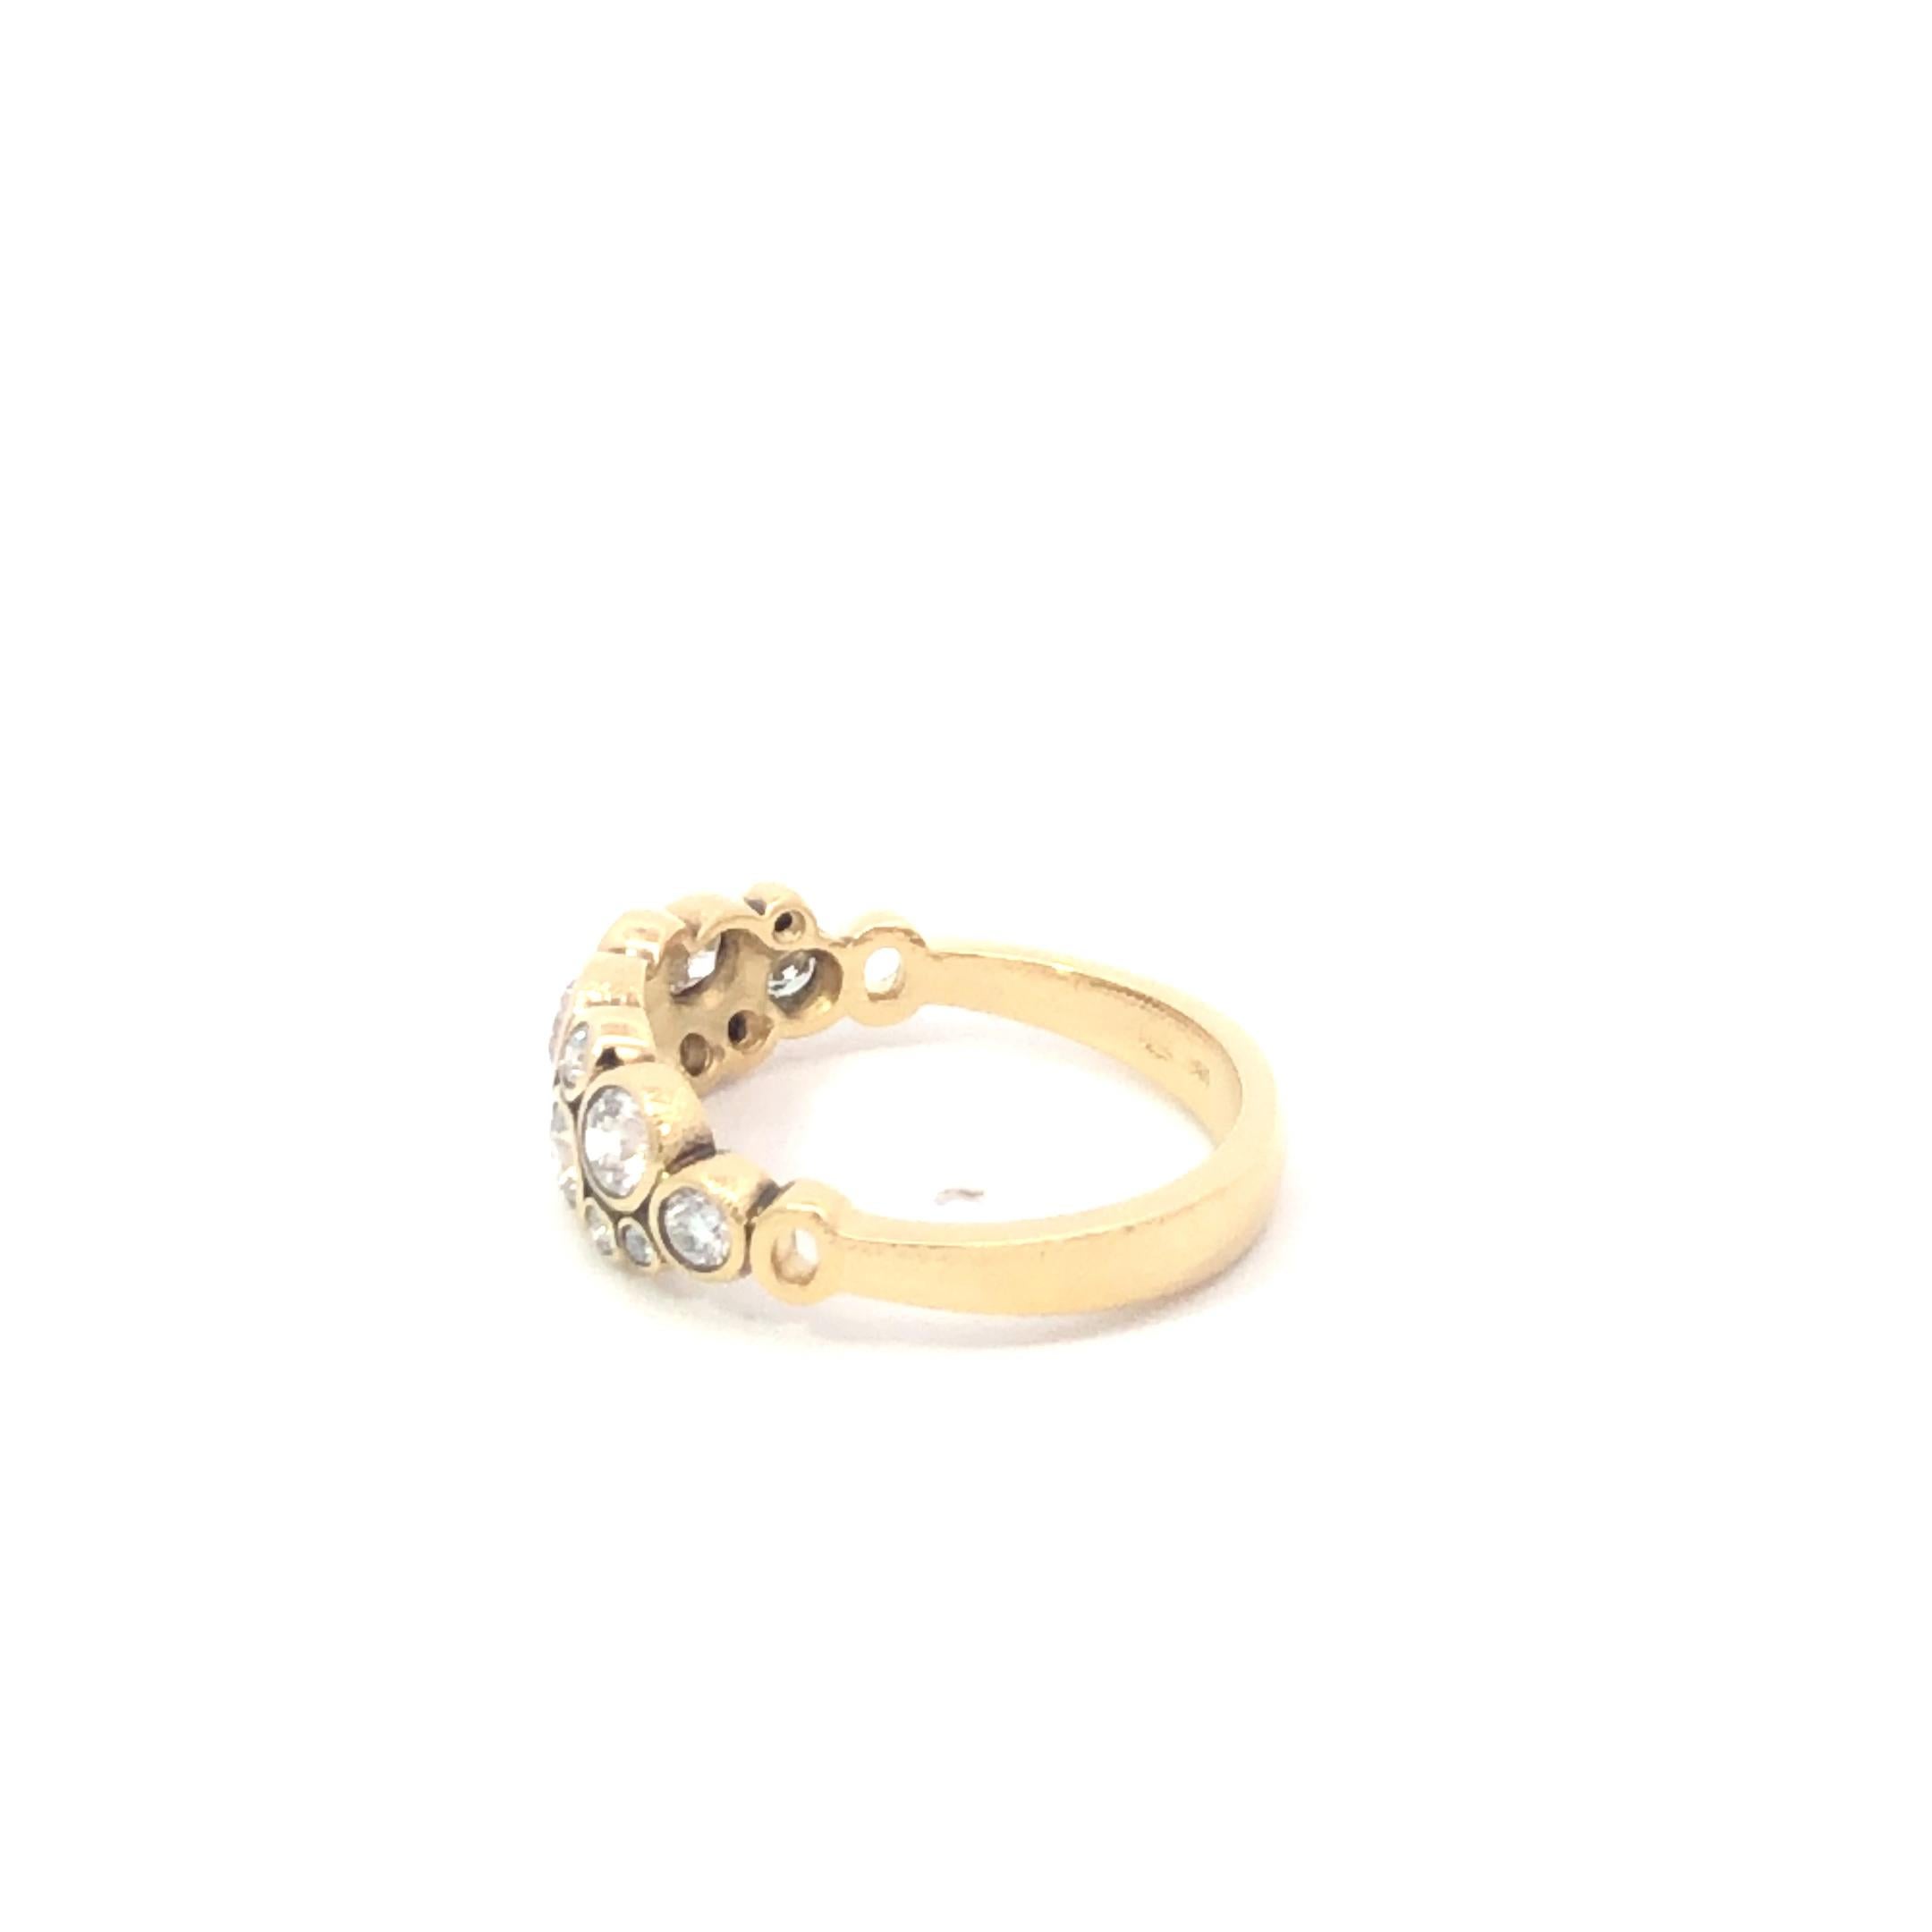 Ring aus 18 Karat Gelbgold und Diamanten, 
Der Ring ist mit 15 weißen Diamanten besetzt. (0,95ct.),
Größe 6.75
4,2 Gramm